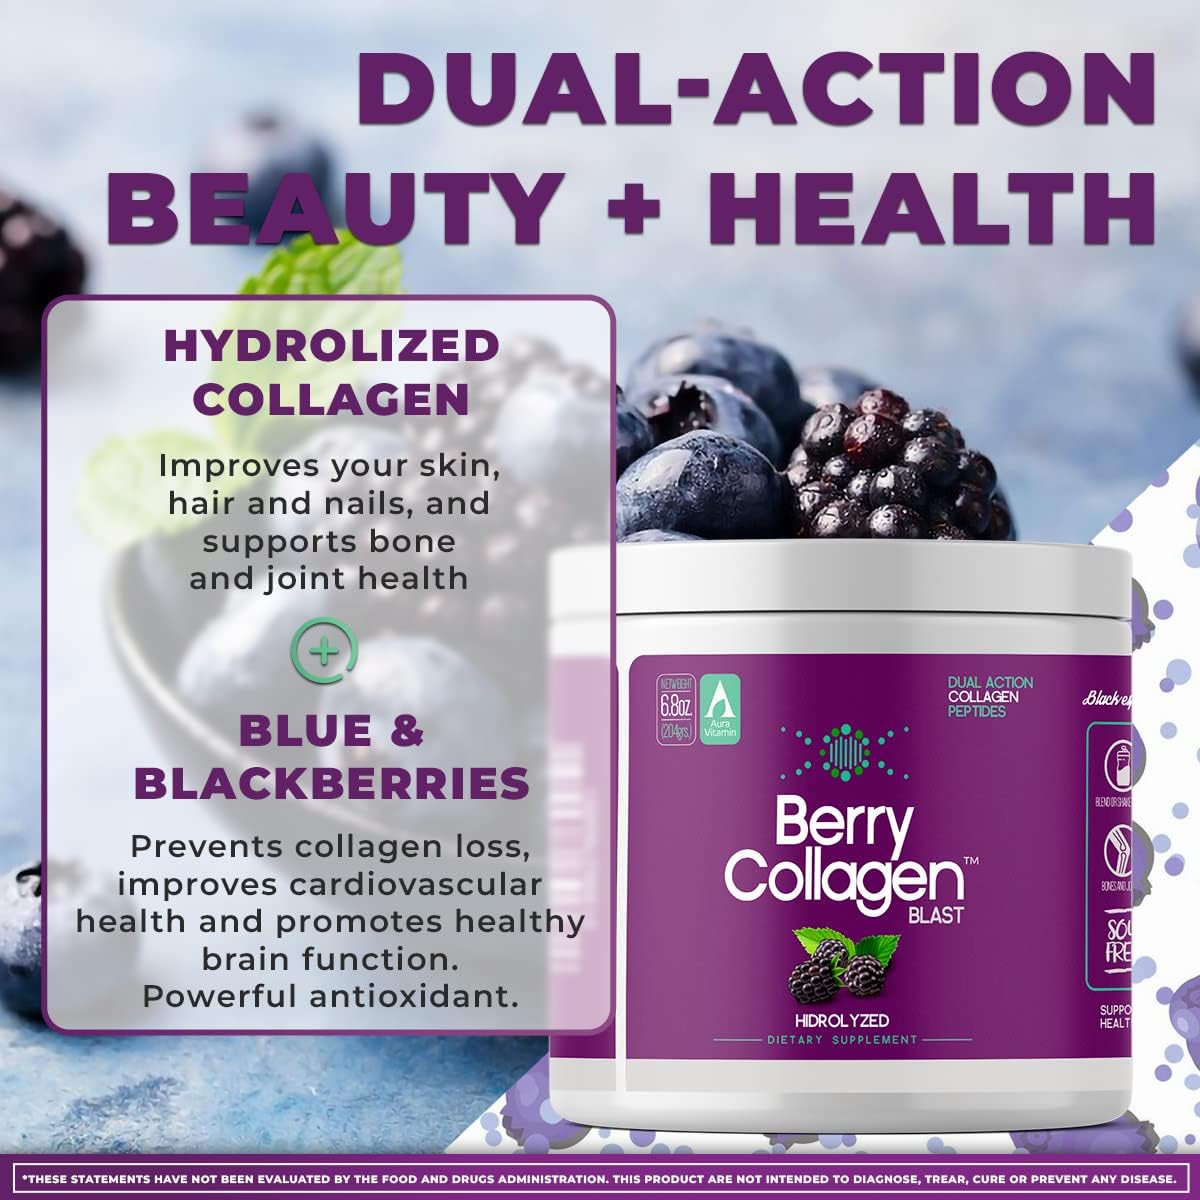 Berry Collagen Blast